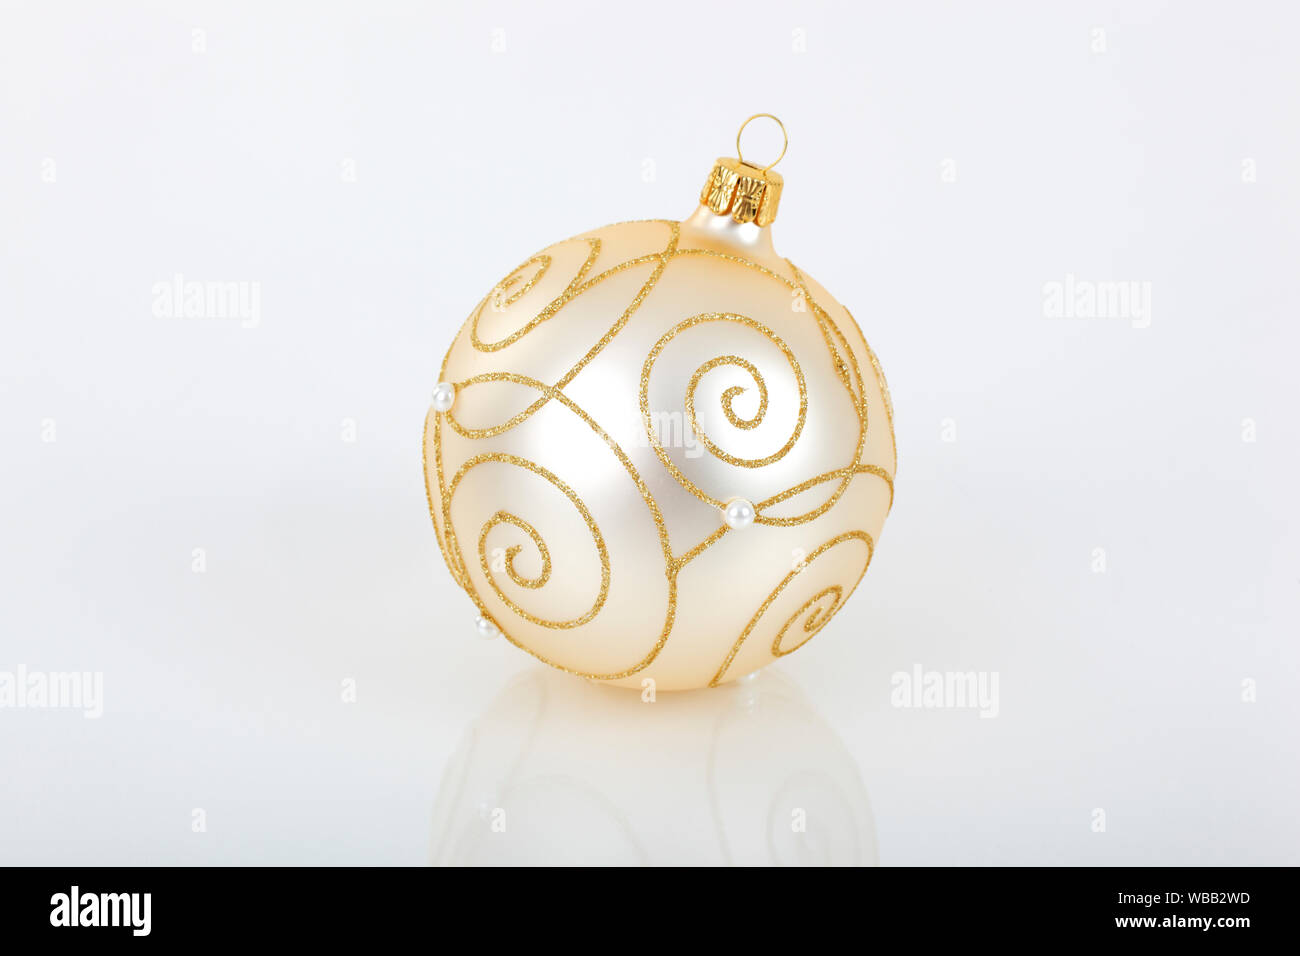 Weihnachtskugel in Weiß, Gold und Silber. Studio Bild vor einem weißen  Hintergrund. Schweiz Stockfotografie - Alamy